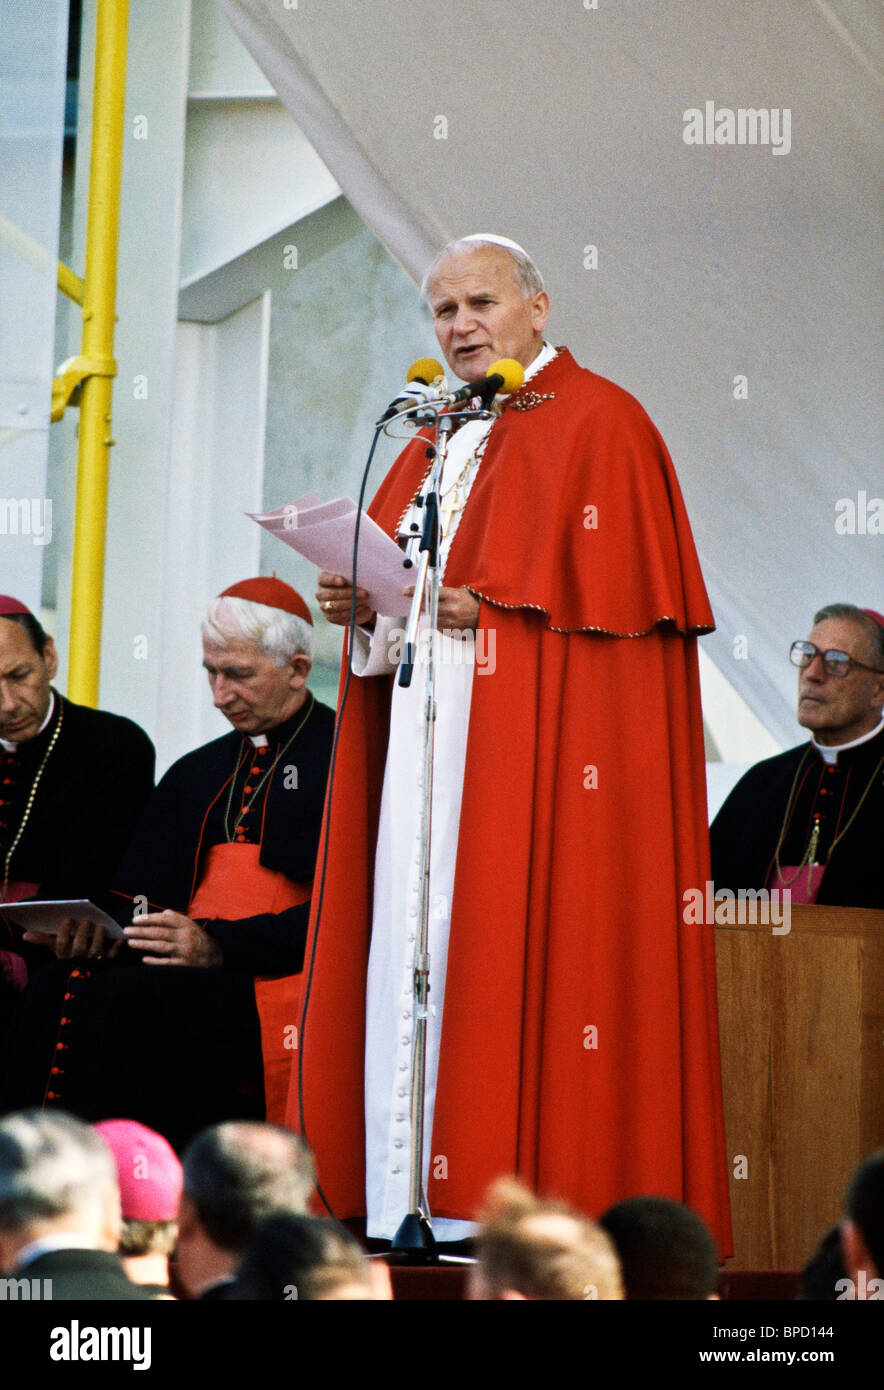 Le cardinal Basil Hume, chef de l'église catholique en Grande-Bretagne, se trouve derrière le Pape Jean Paul II au Palais Crystal pendant une visite en Grande-Bretagne 1982 Banque D'Images